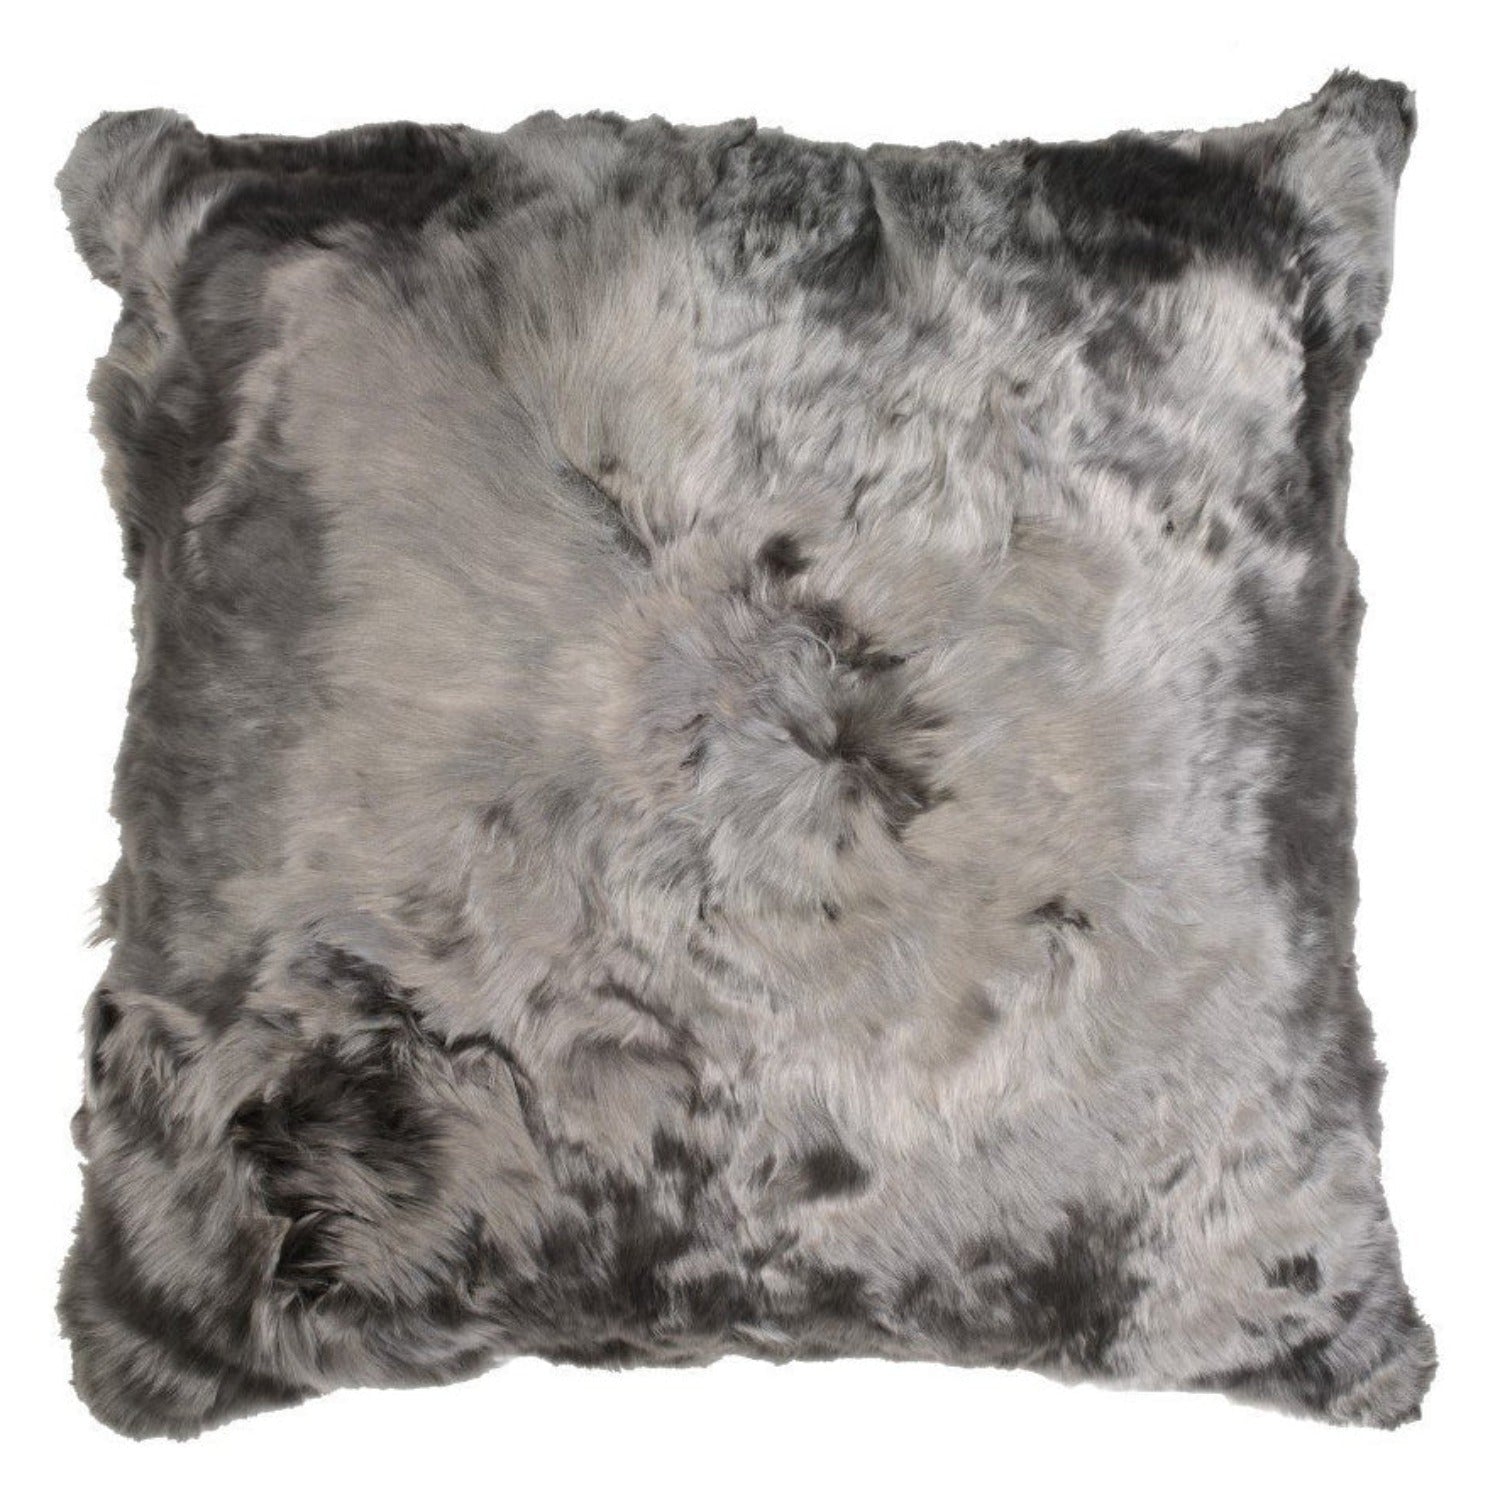 Suri Alpaca Charcoal Pillow